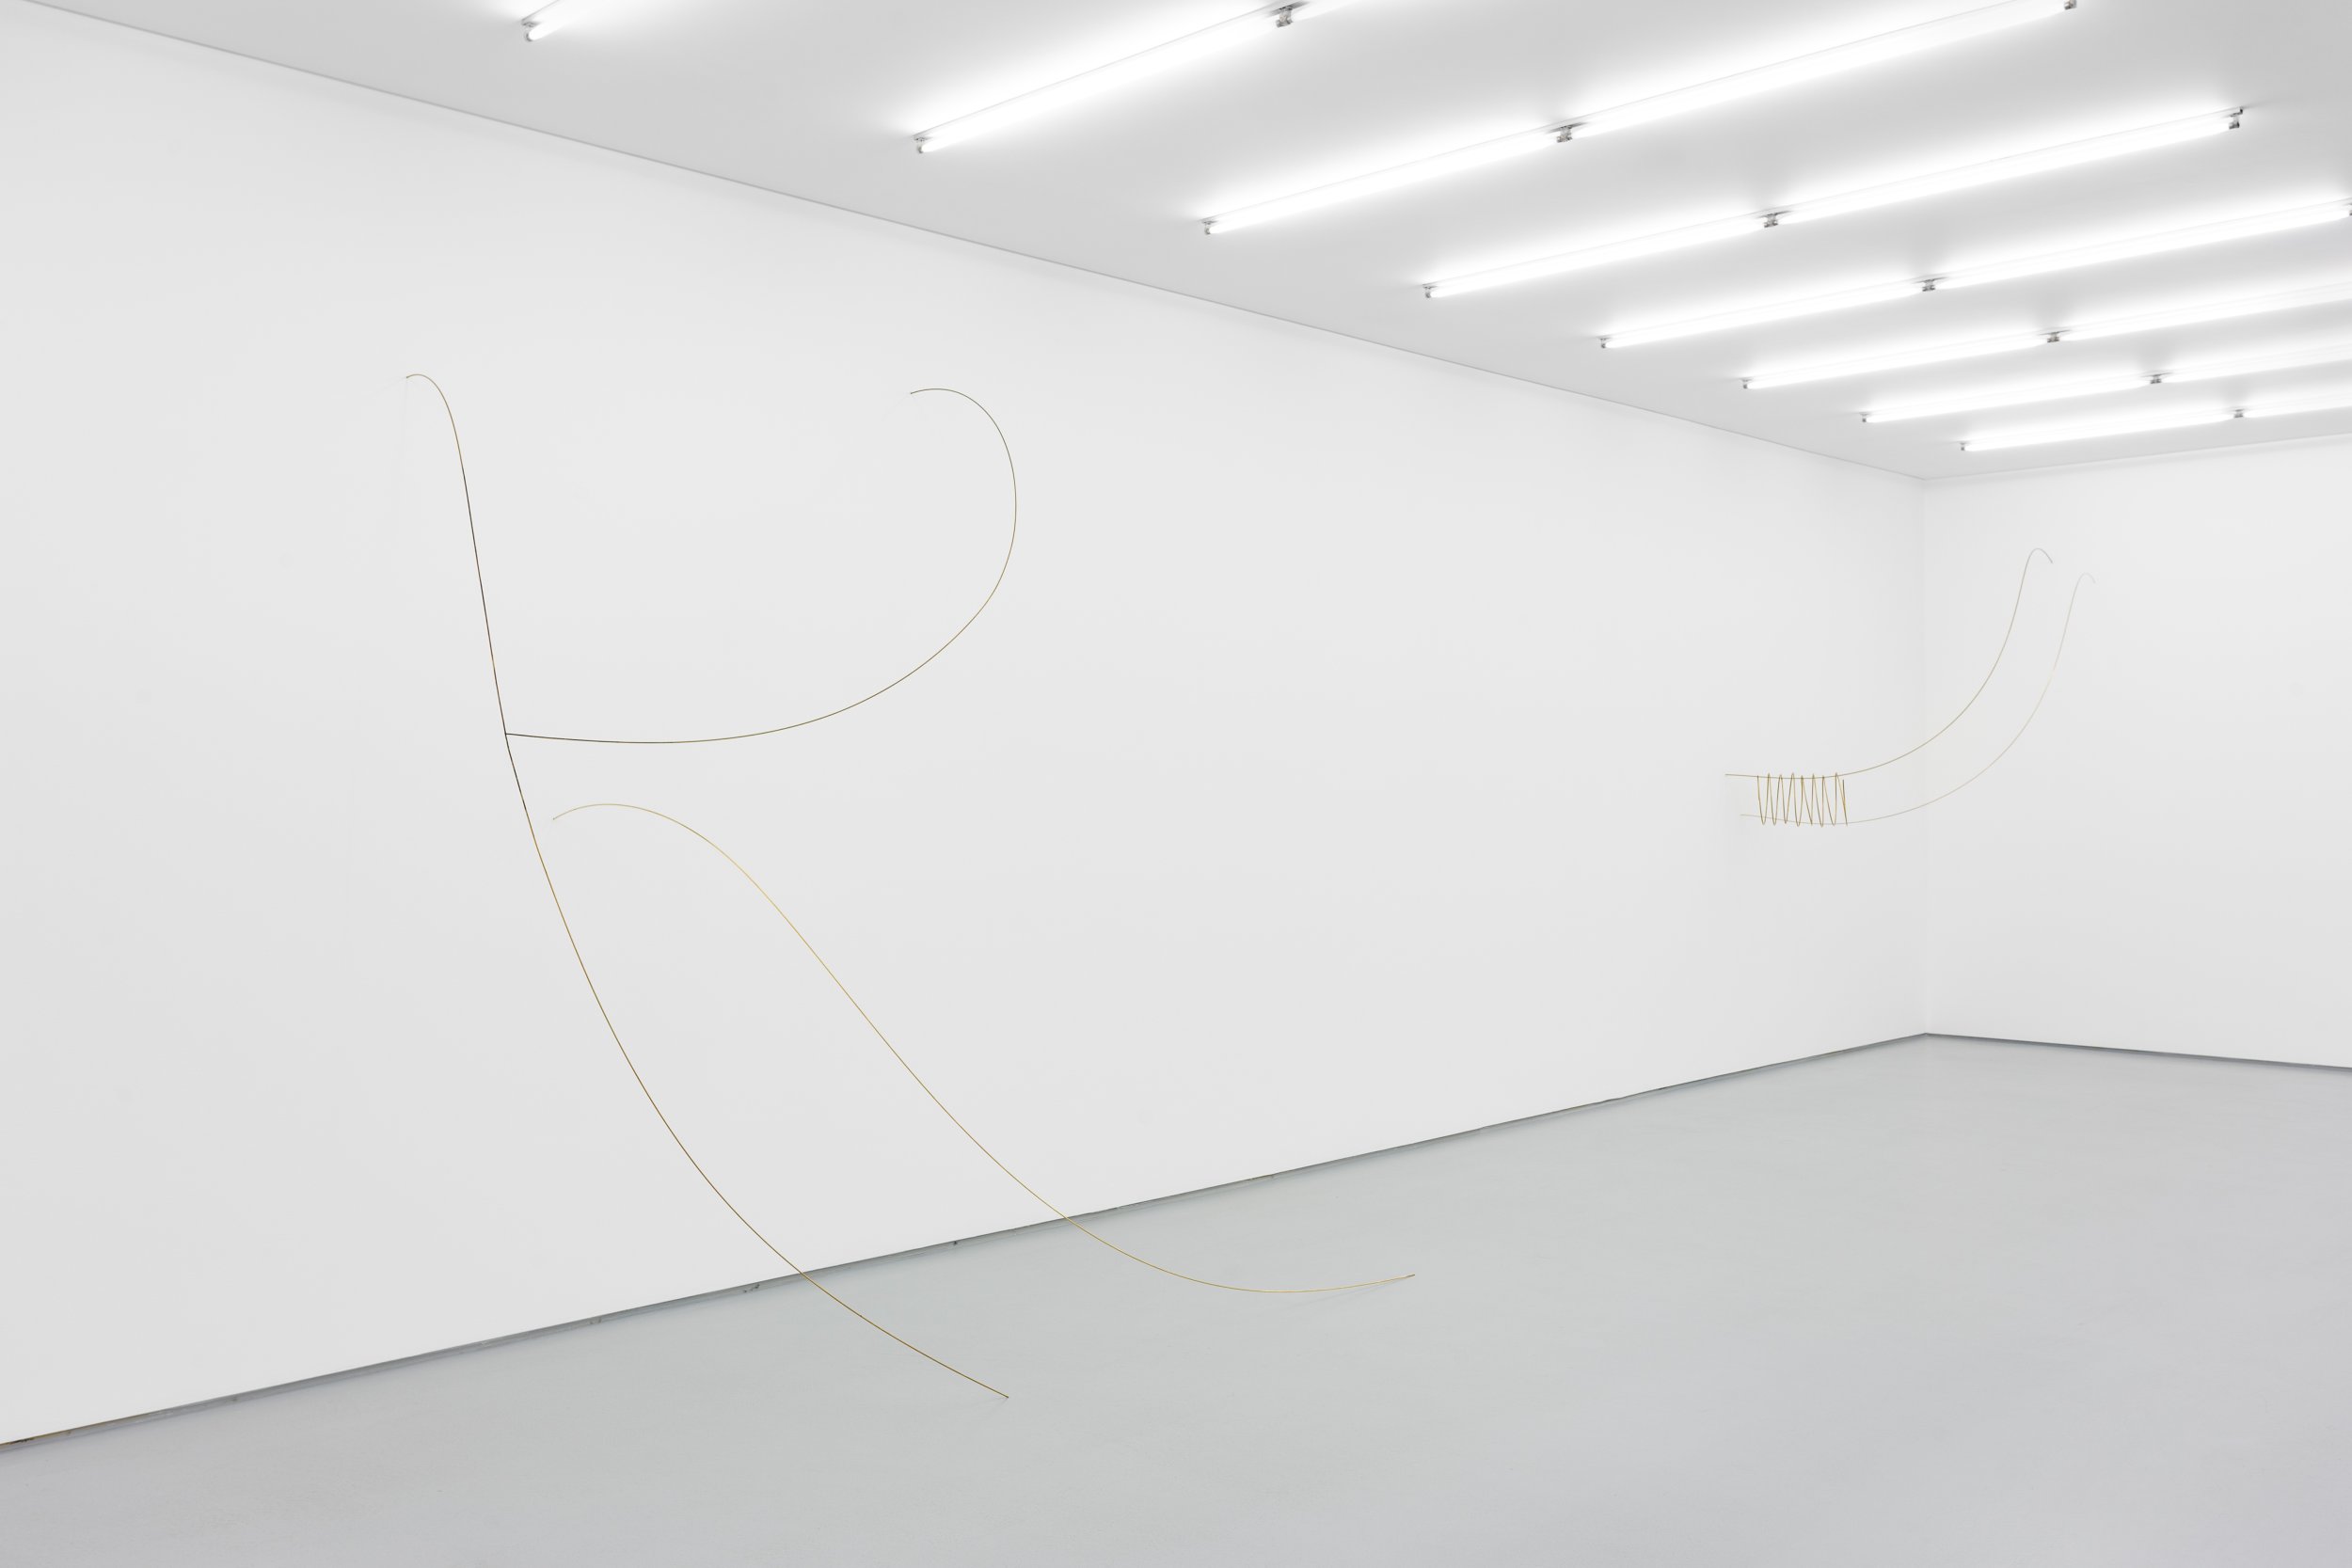 Exhibition view: WIND DREAMS, Joana Escoval, Galeria Vera Cortês, 2022
